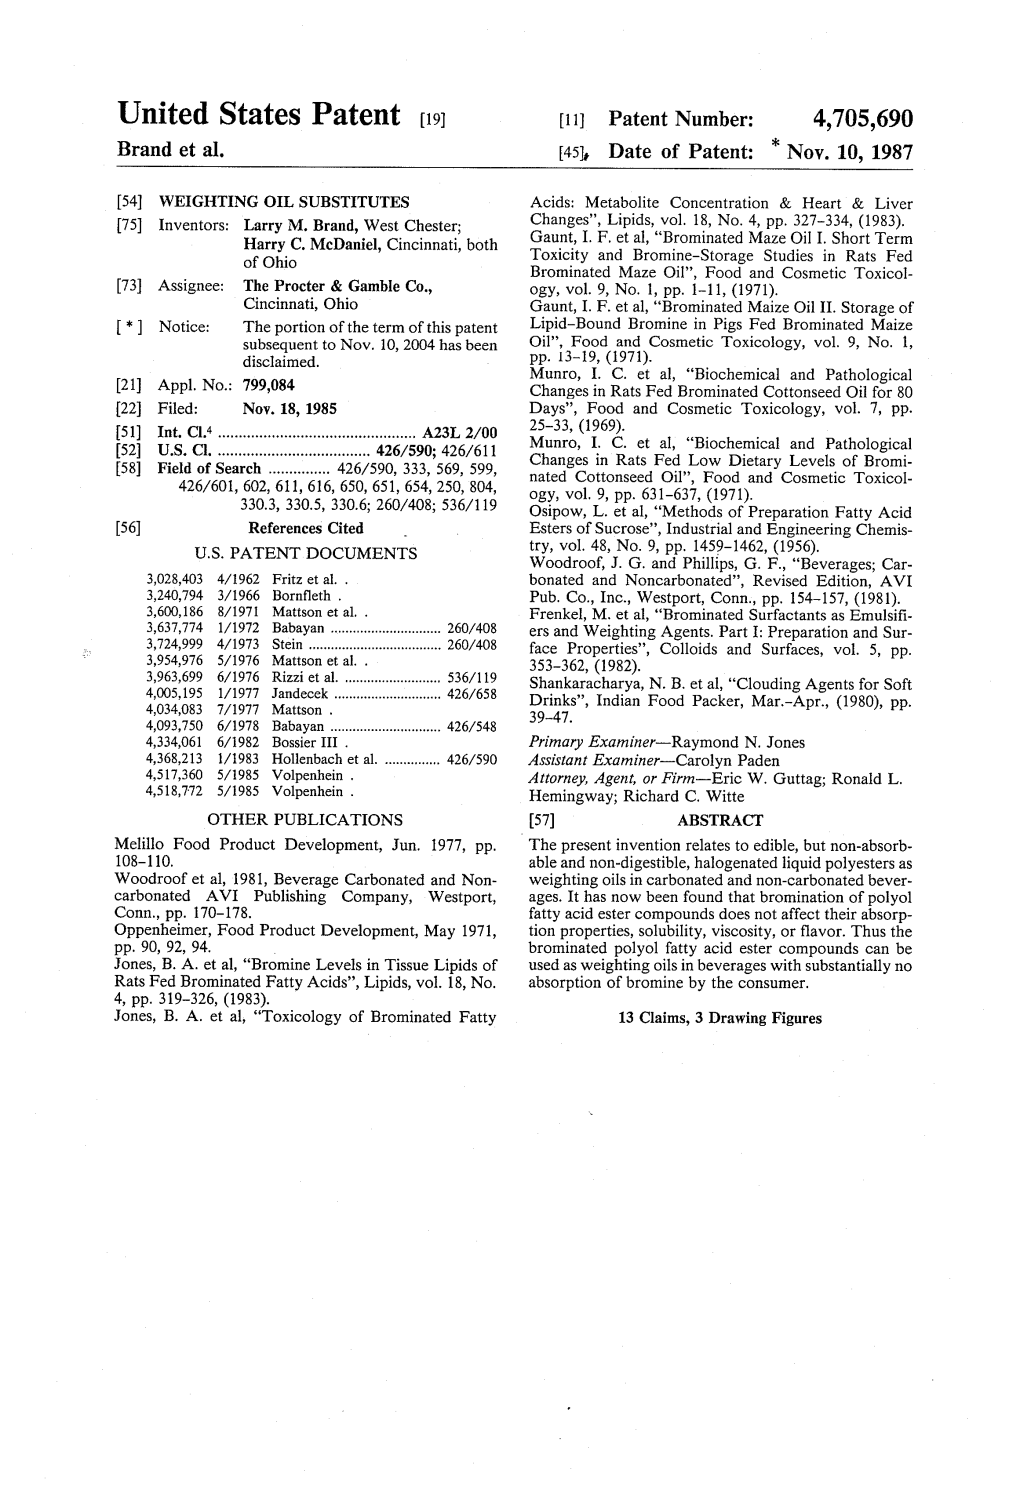 United States Patent (19) 11) Patent Number: 4,705,690 Brand Et Al